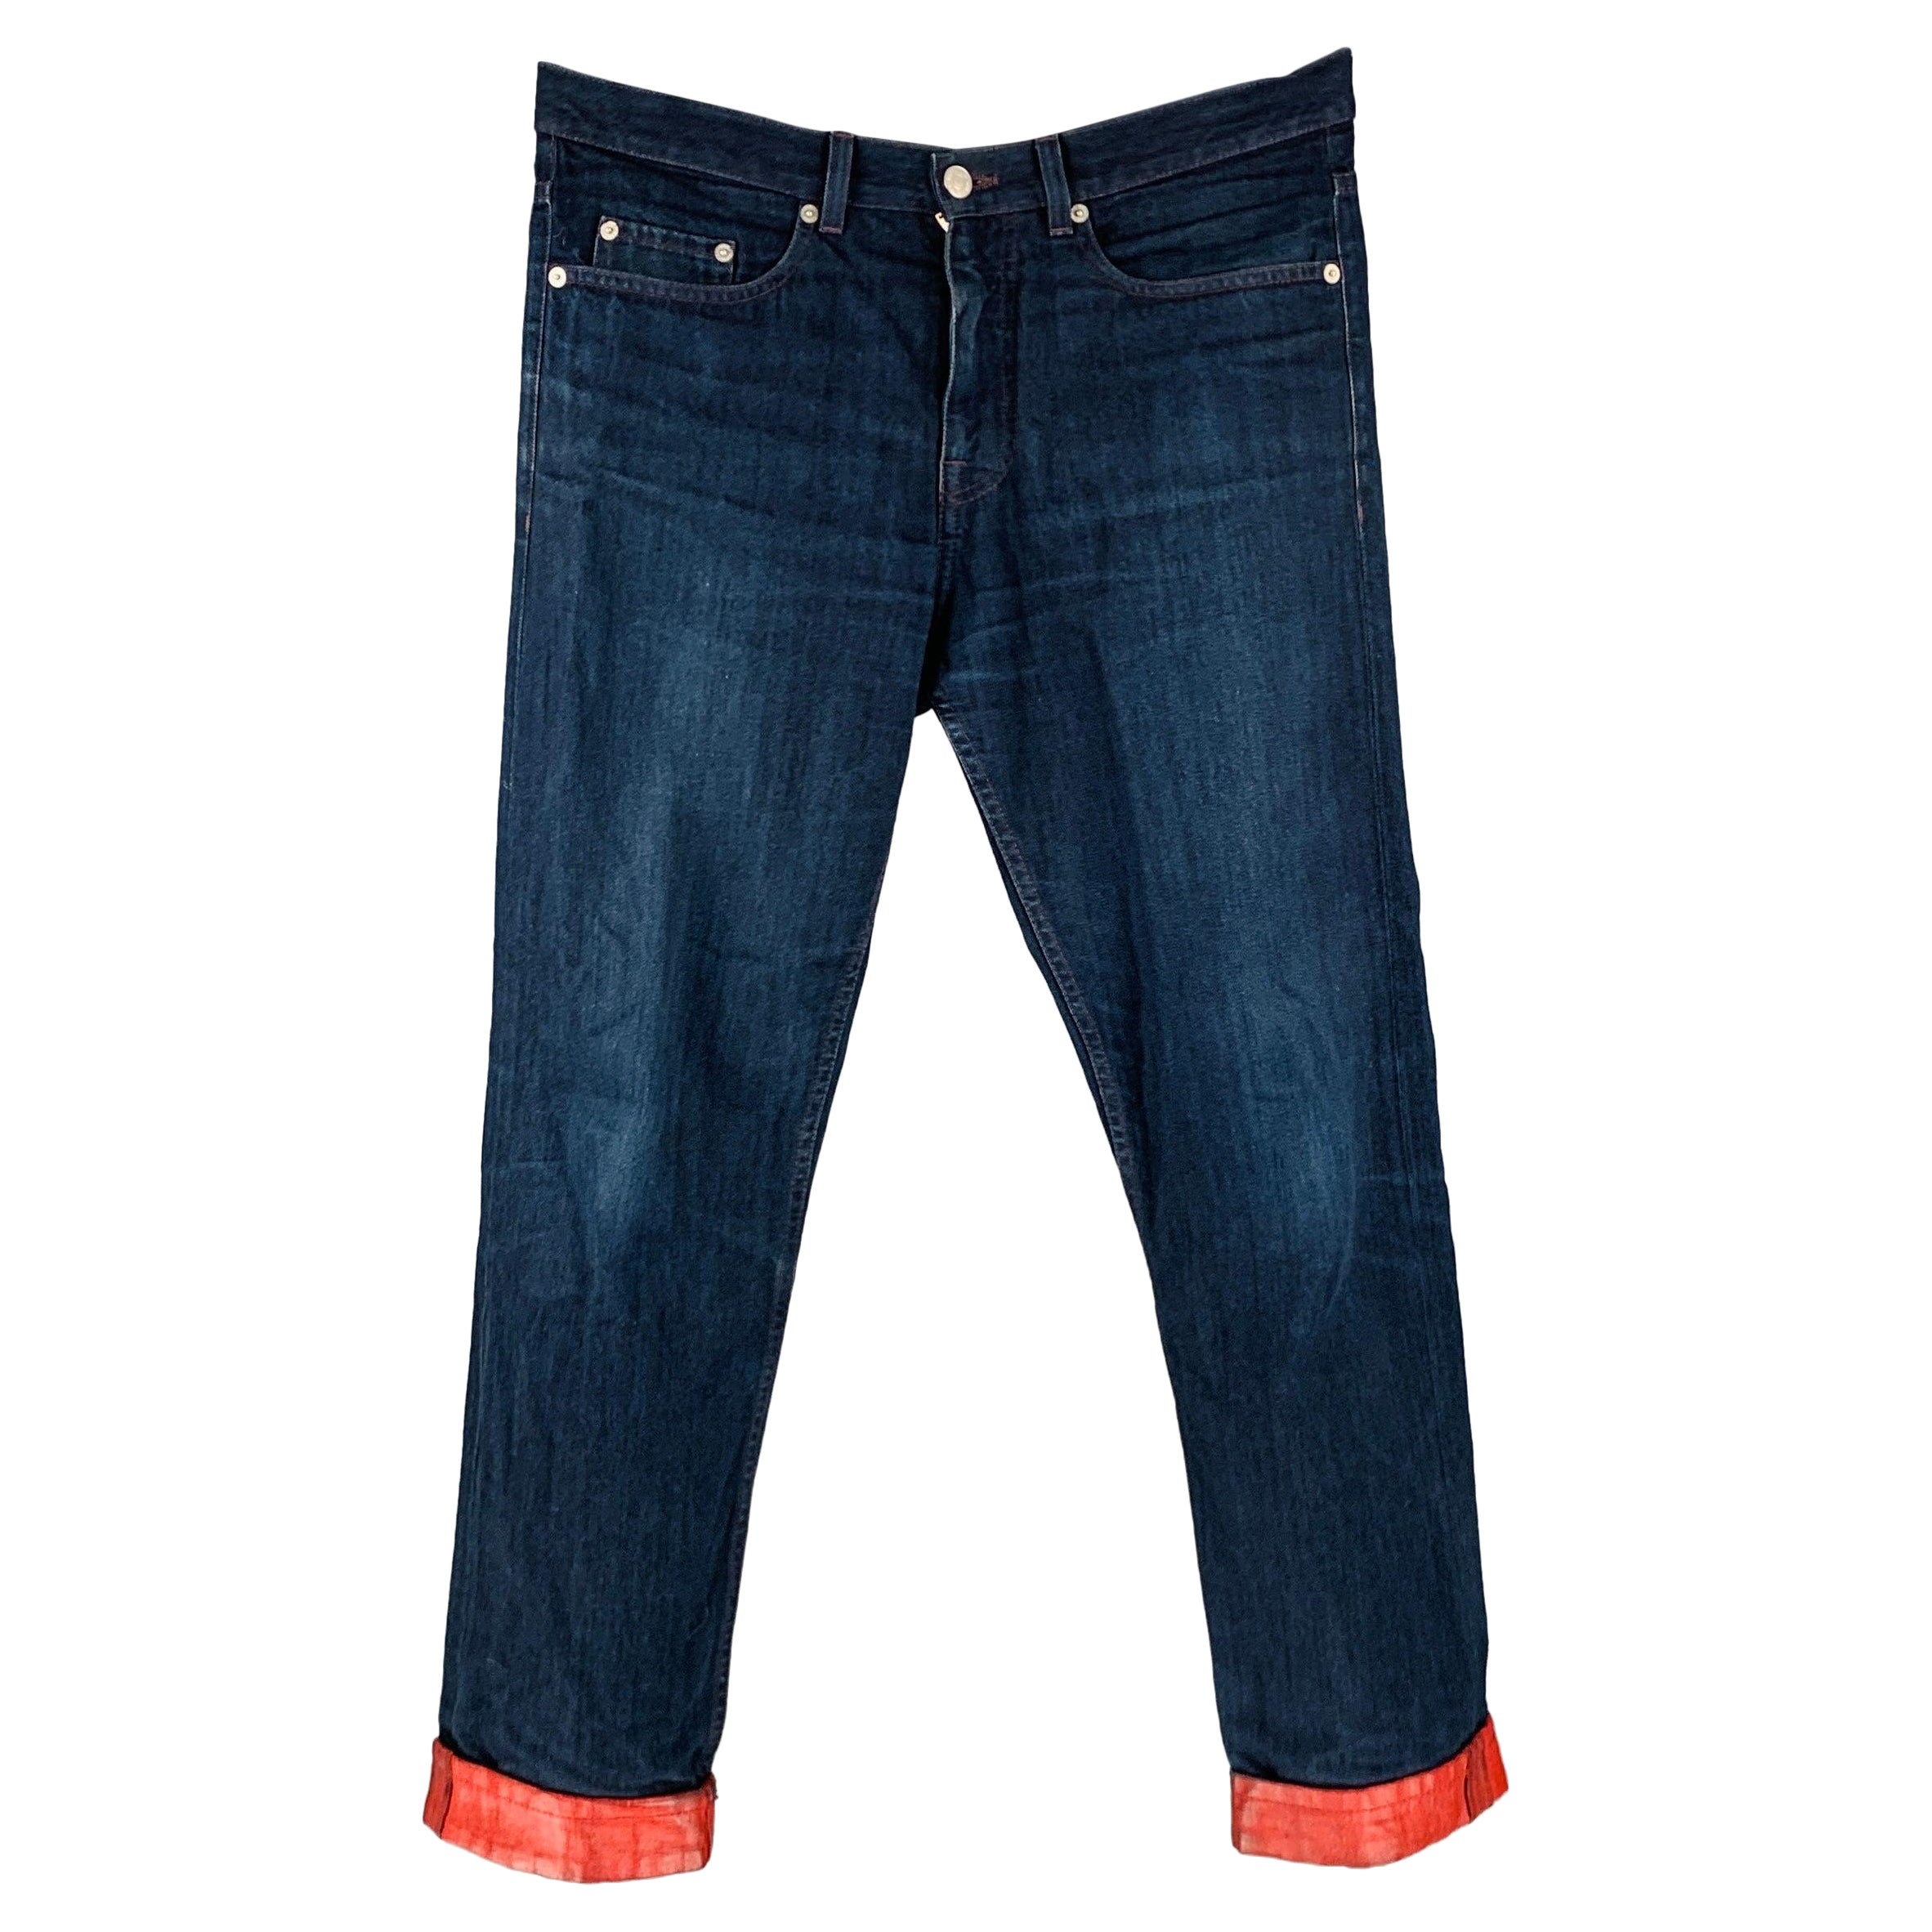 DRIES VAN NOTEN - Jean à 5 poches en coton bleu marine, taille 30 en vente